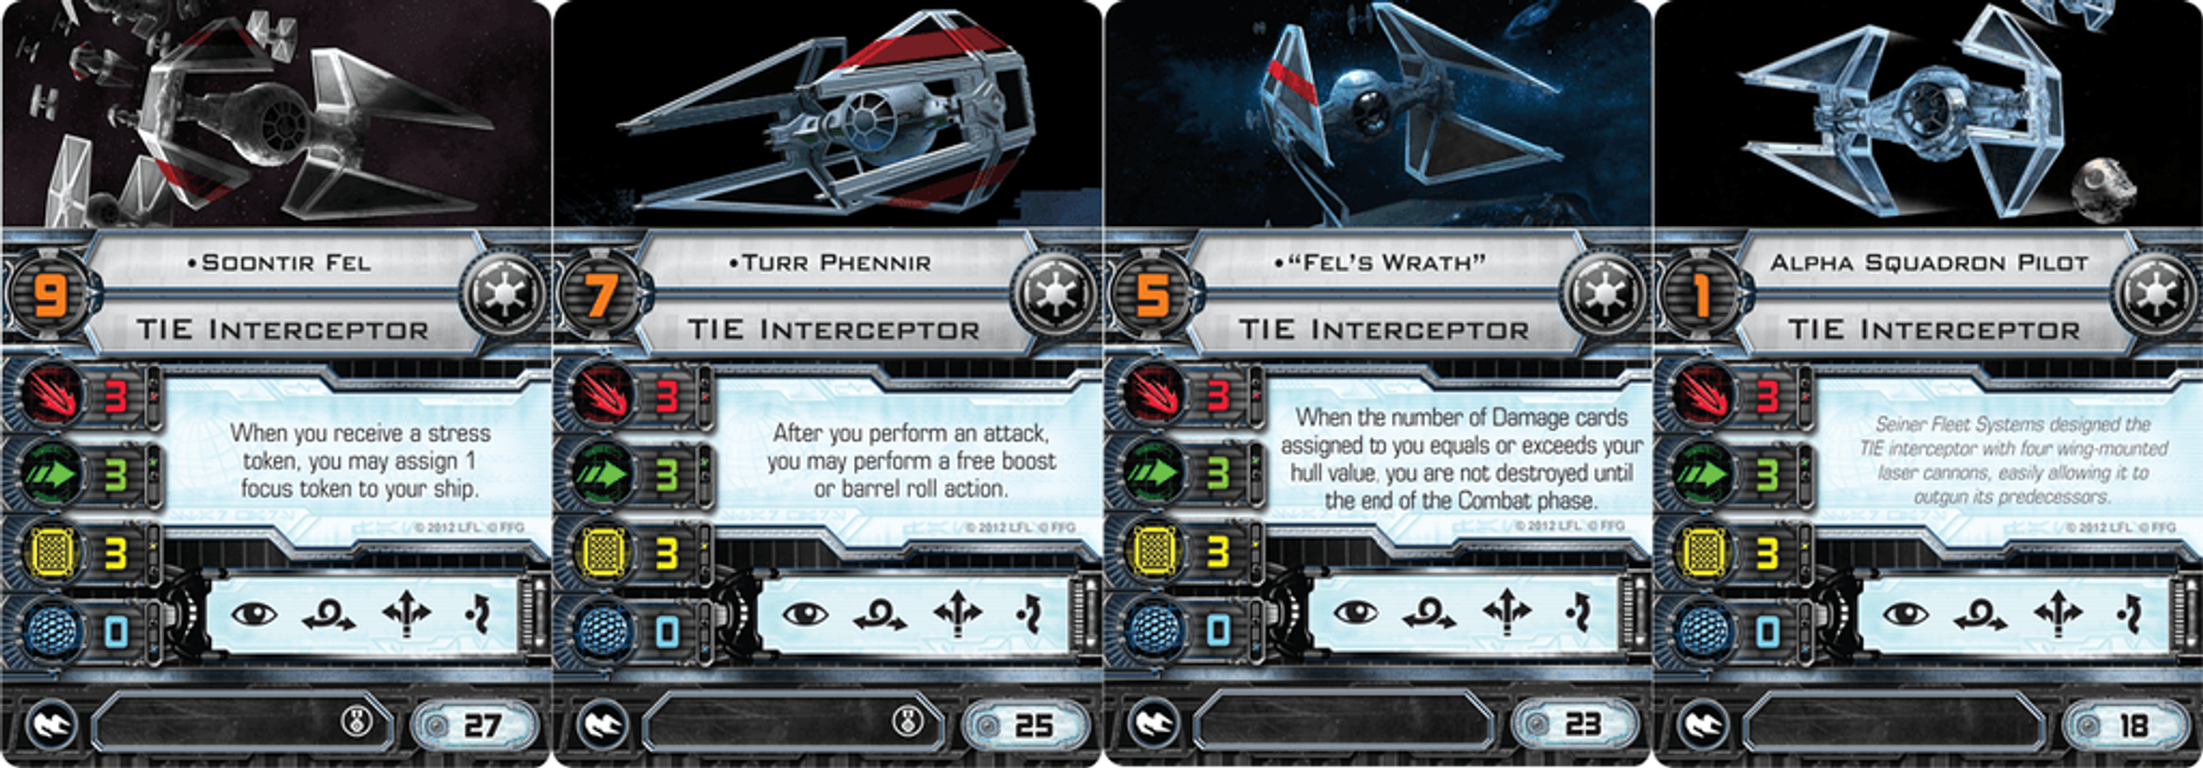 Star Wars: Le Jeu de Figurines - Intercepteur TIE - Pack d'extension cartes